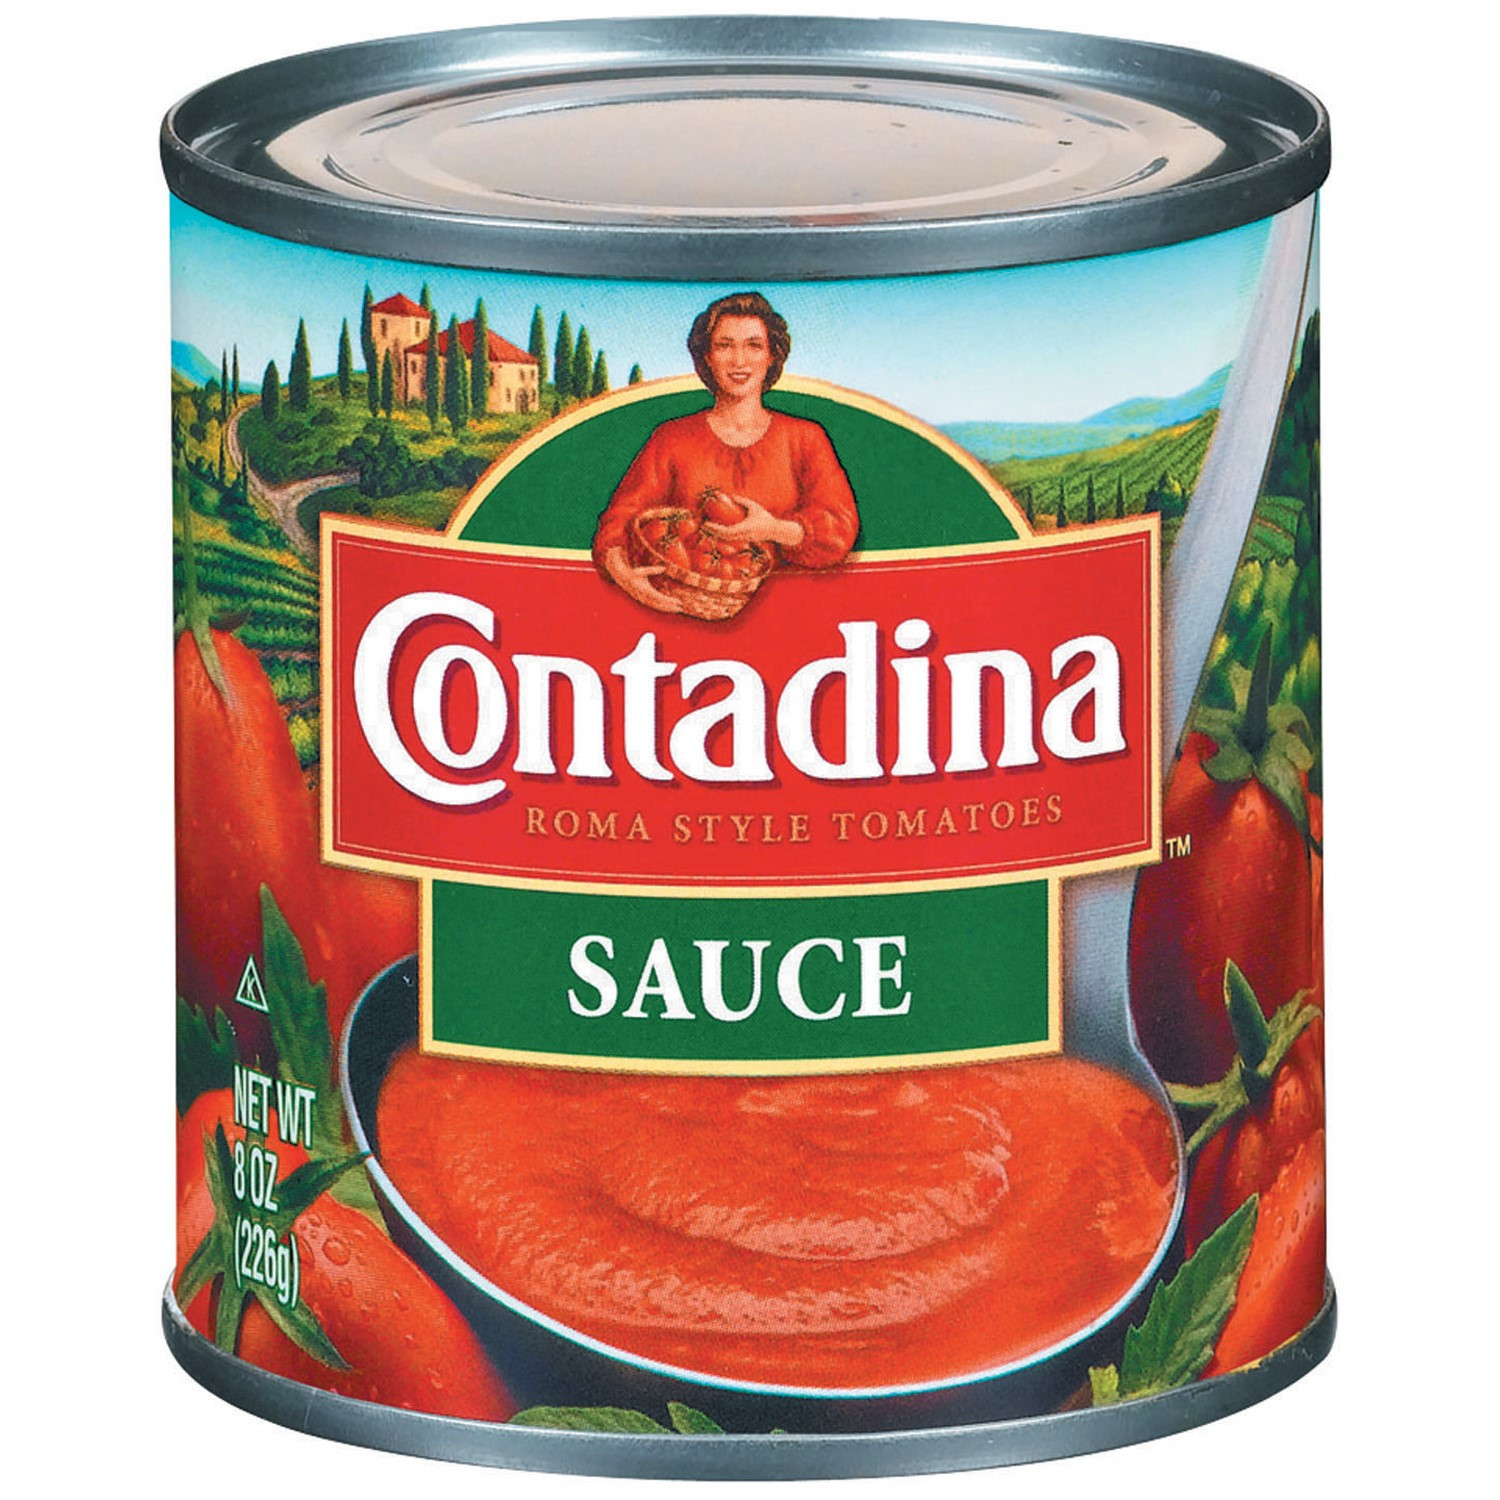 Contadina Tomato Sauce
 contadina tomato sauce review